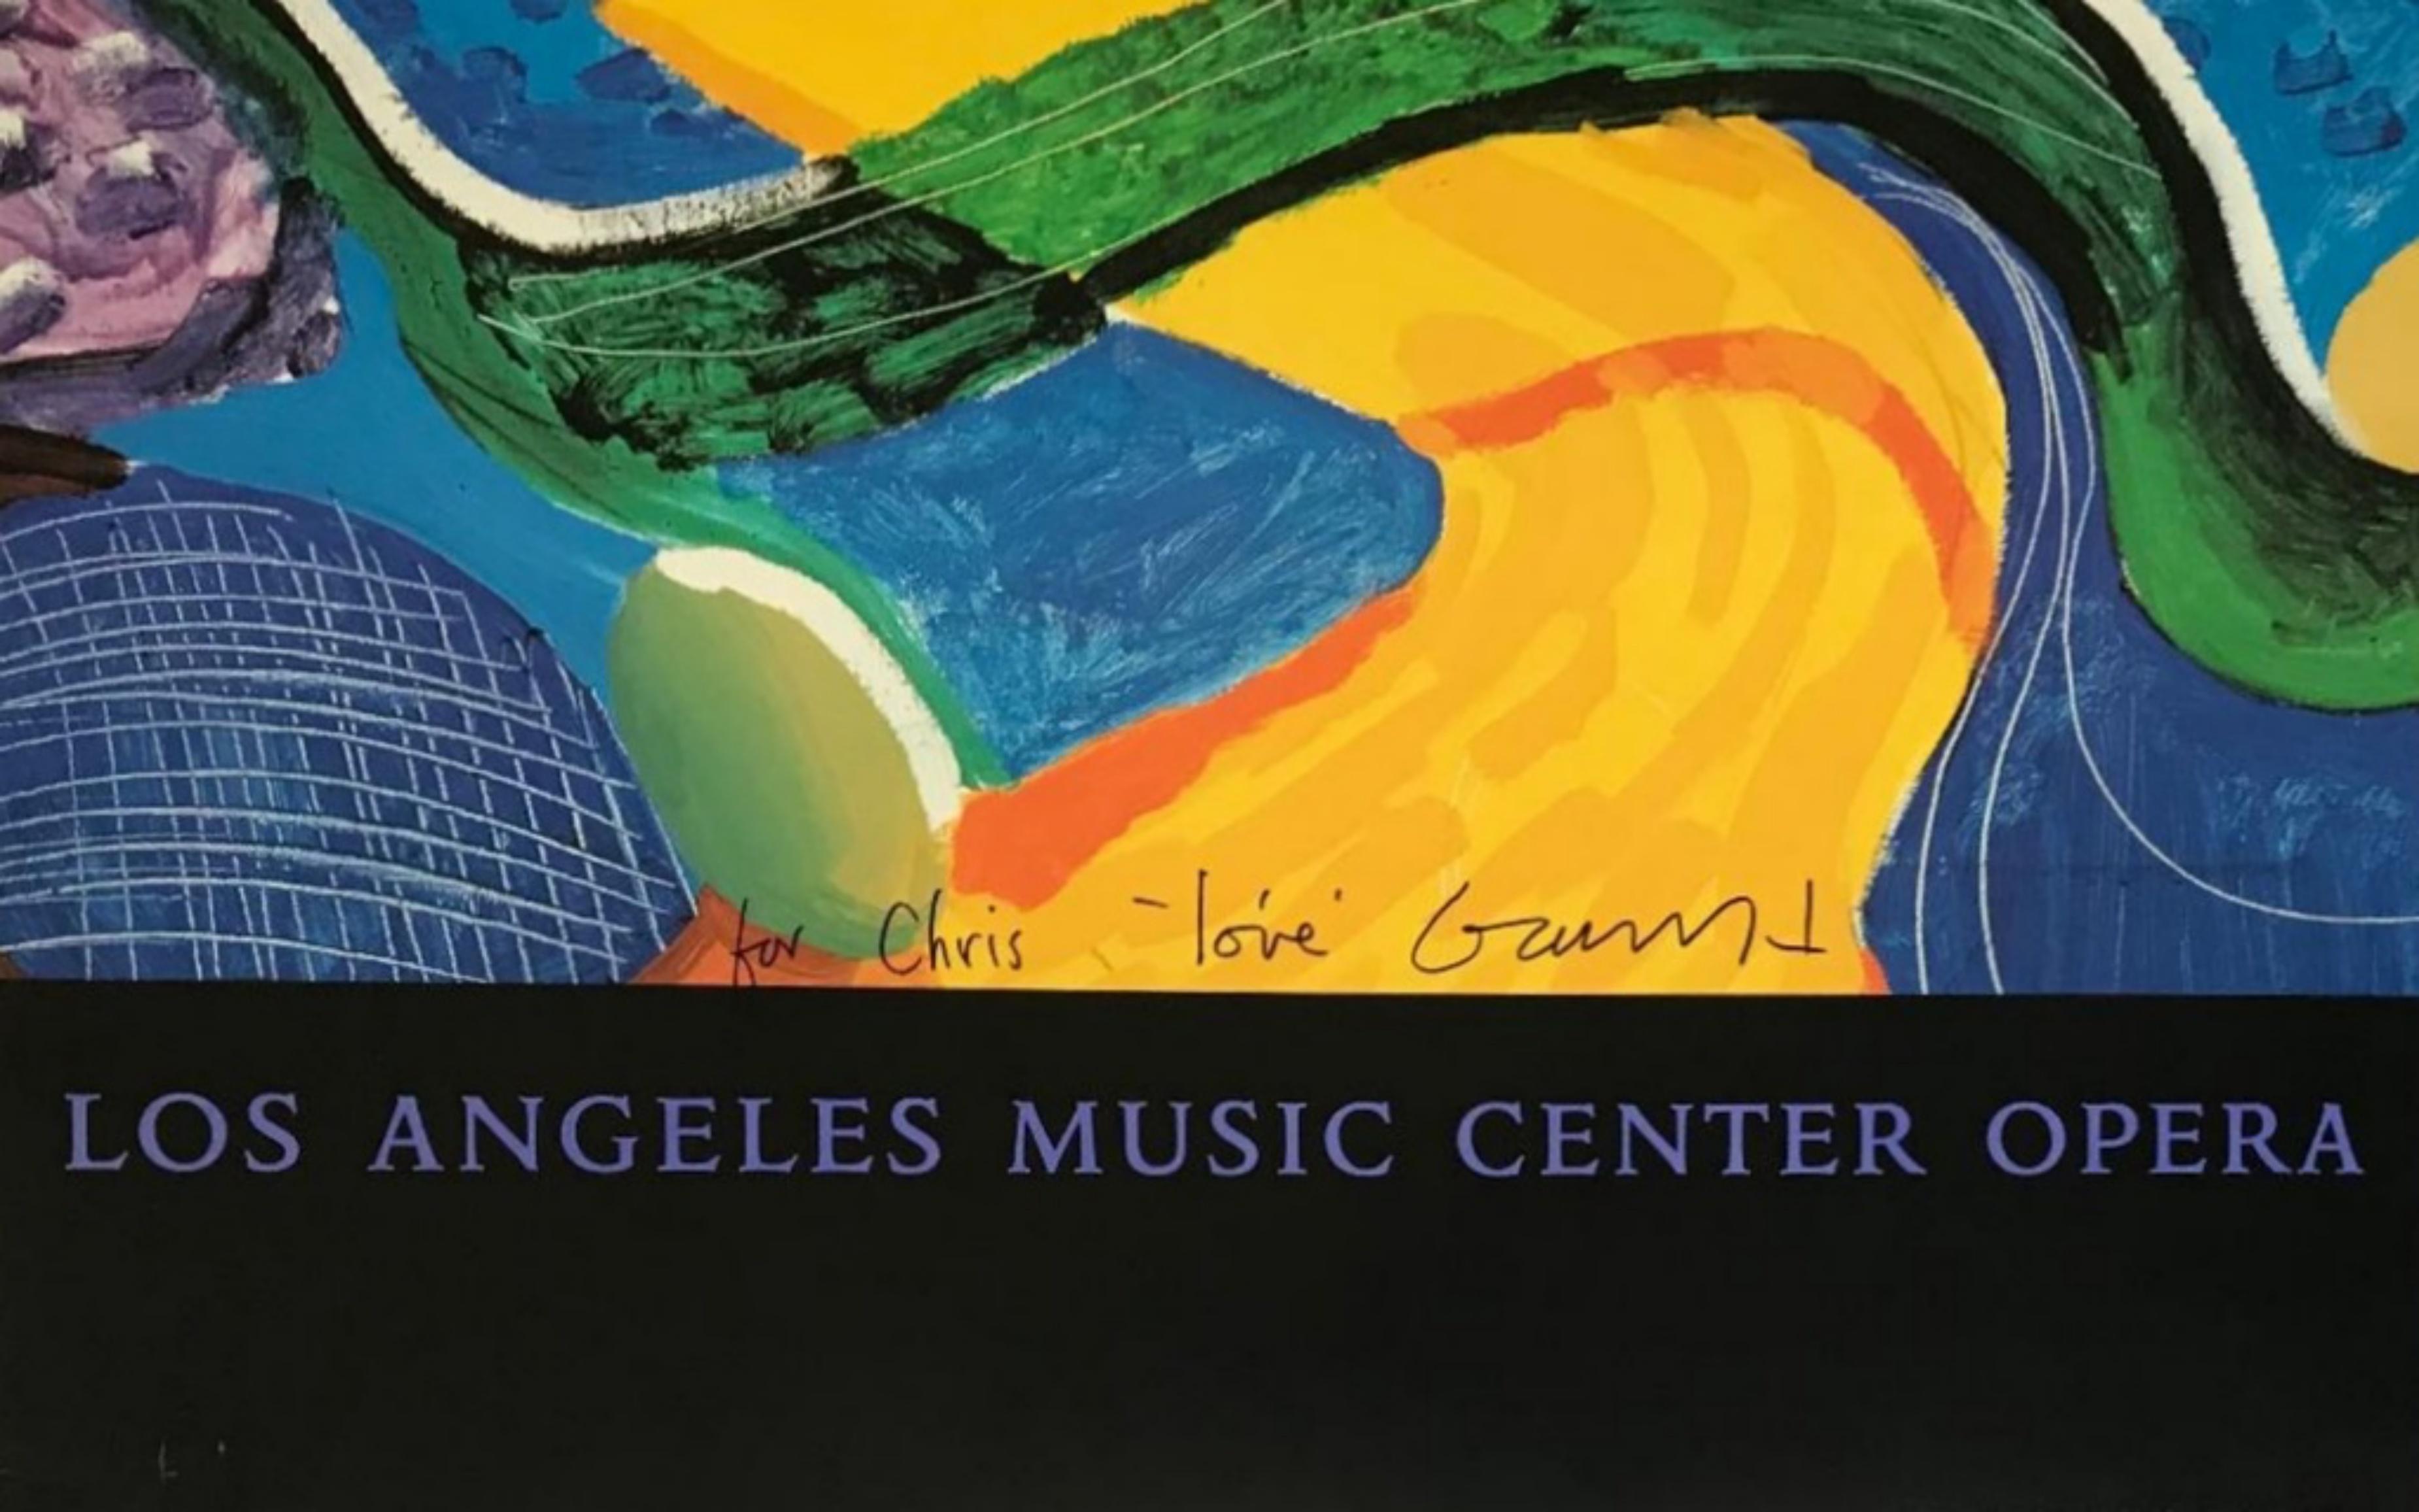 Affiche The Golden Road, Los Angeles Music Center Opera (signée et inscrite à la main) - Print de David Hockney